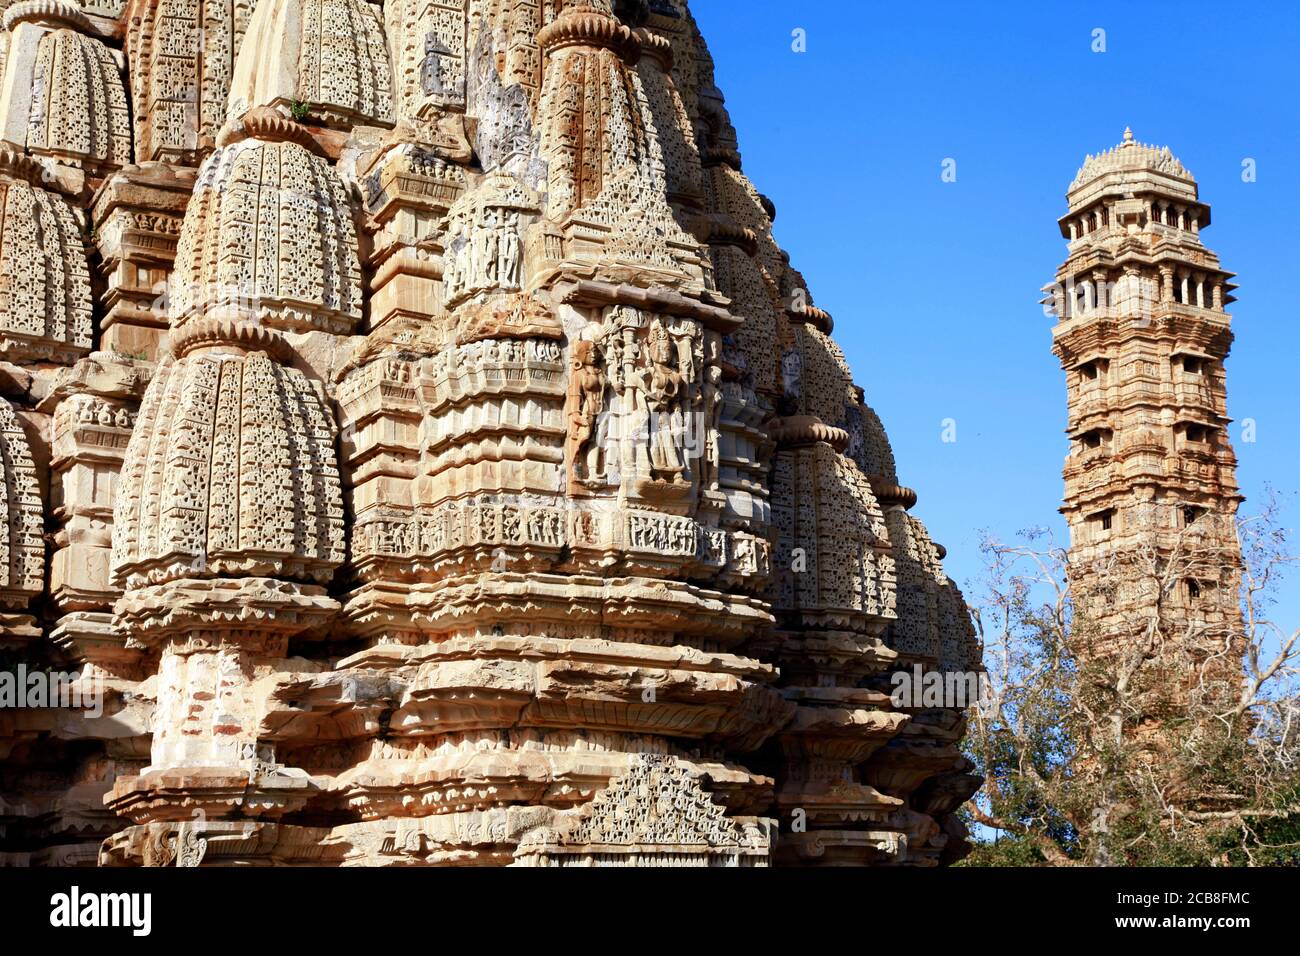 Incroyable Inde. Culture et histoire. fort de Chittograrh et temples avec des sculptures en pierre étonnantes. Rajasthan Banque D'Images